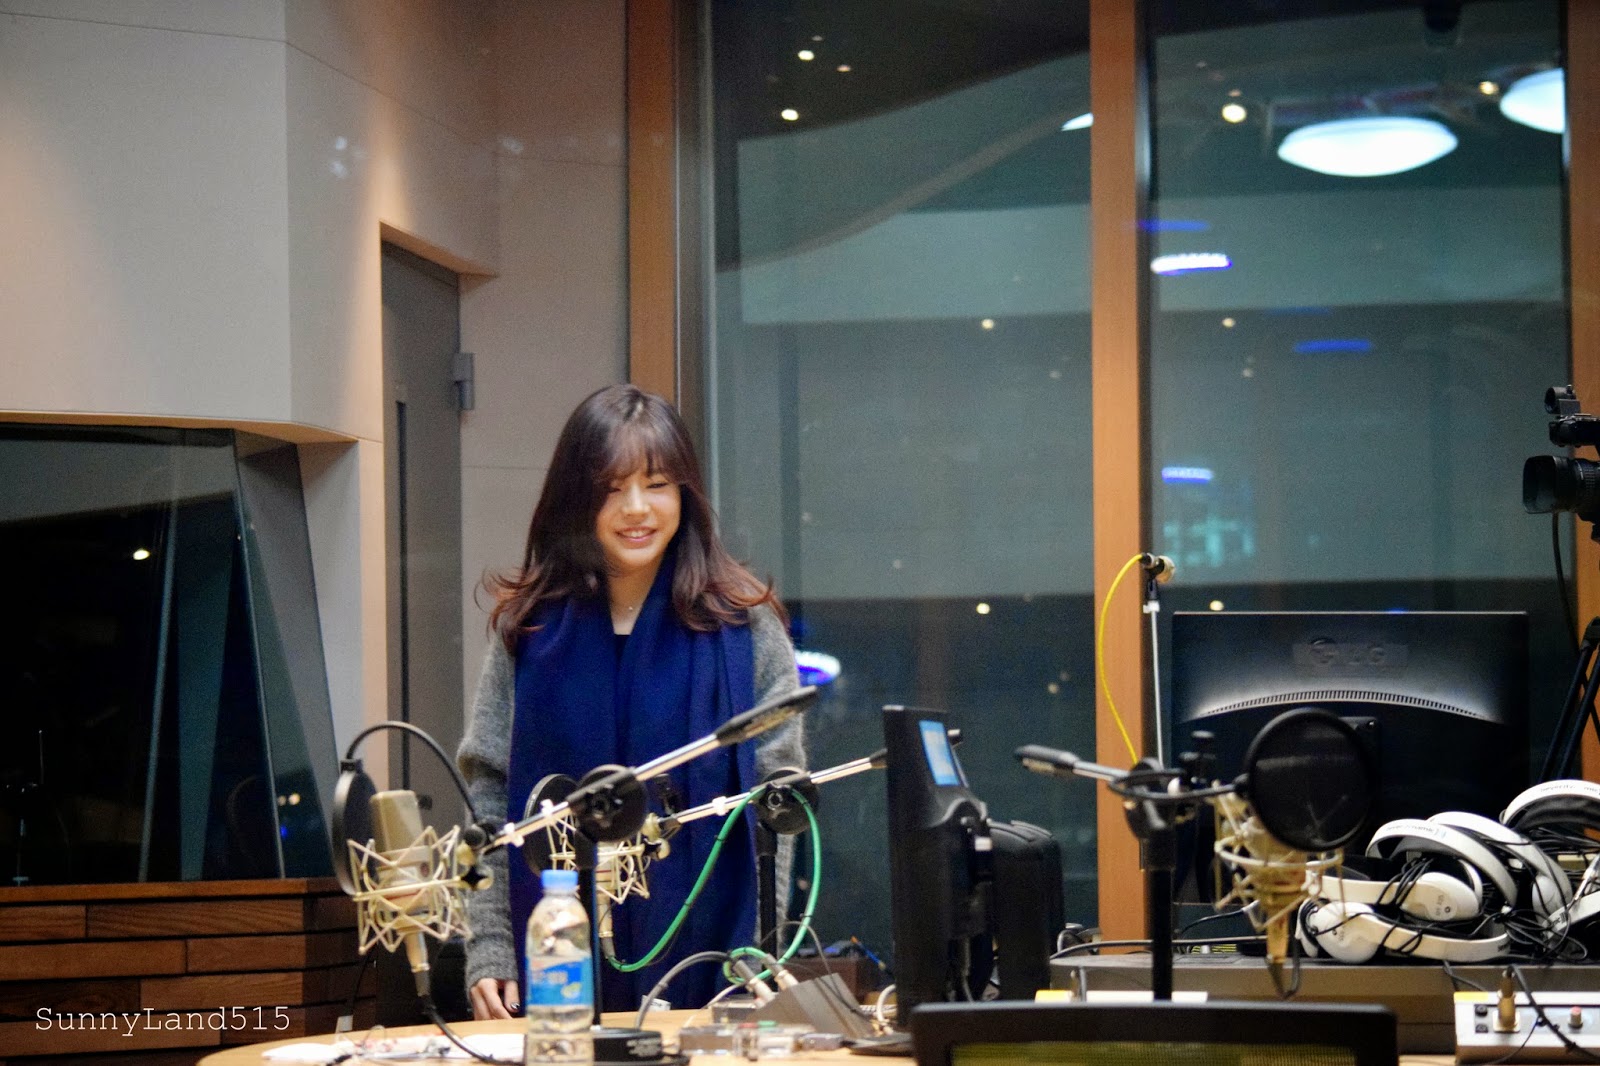 [OTHER][06-02-2015]Hình ảnh mới nhất từ DJ Sunny tại Radio MBC FM4U - "FM Date" - Page 10 DSC_0001_Fotor